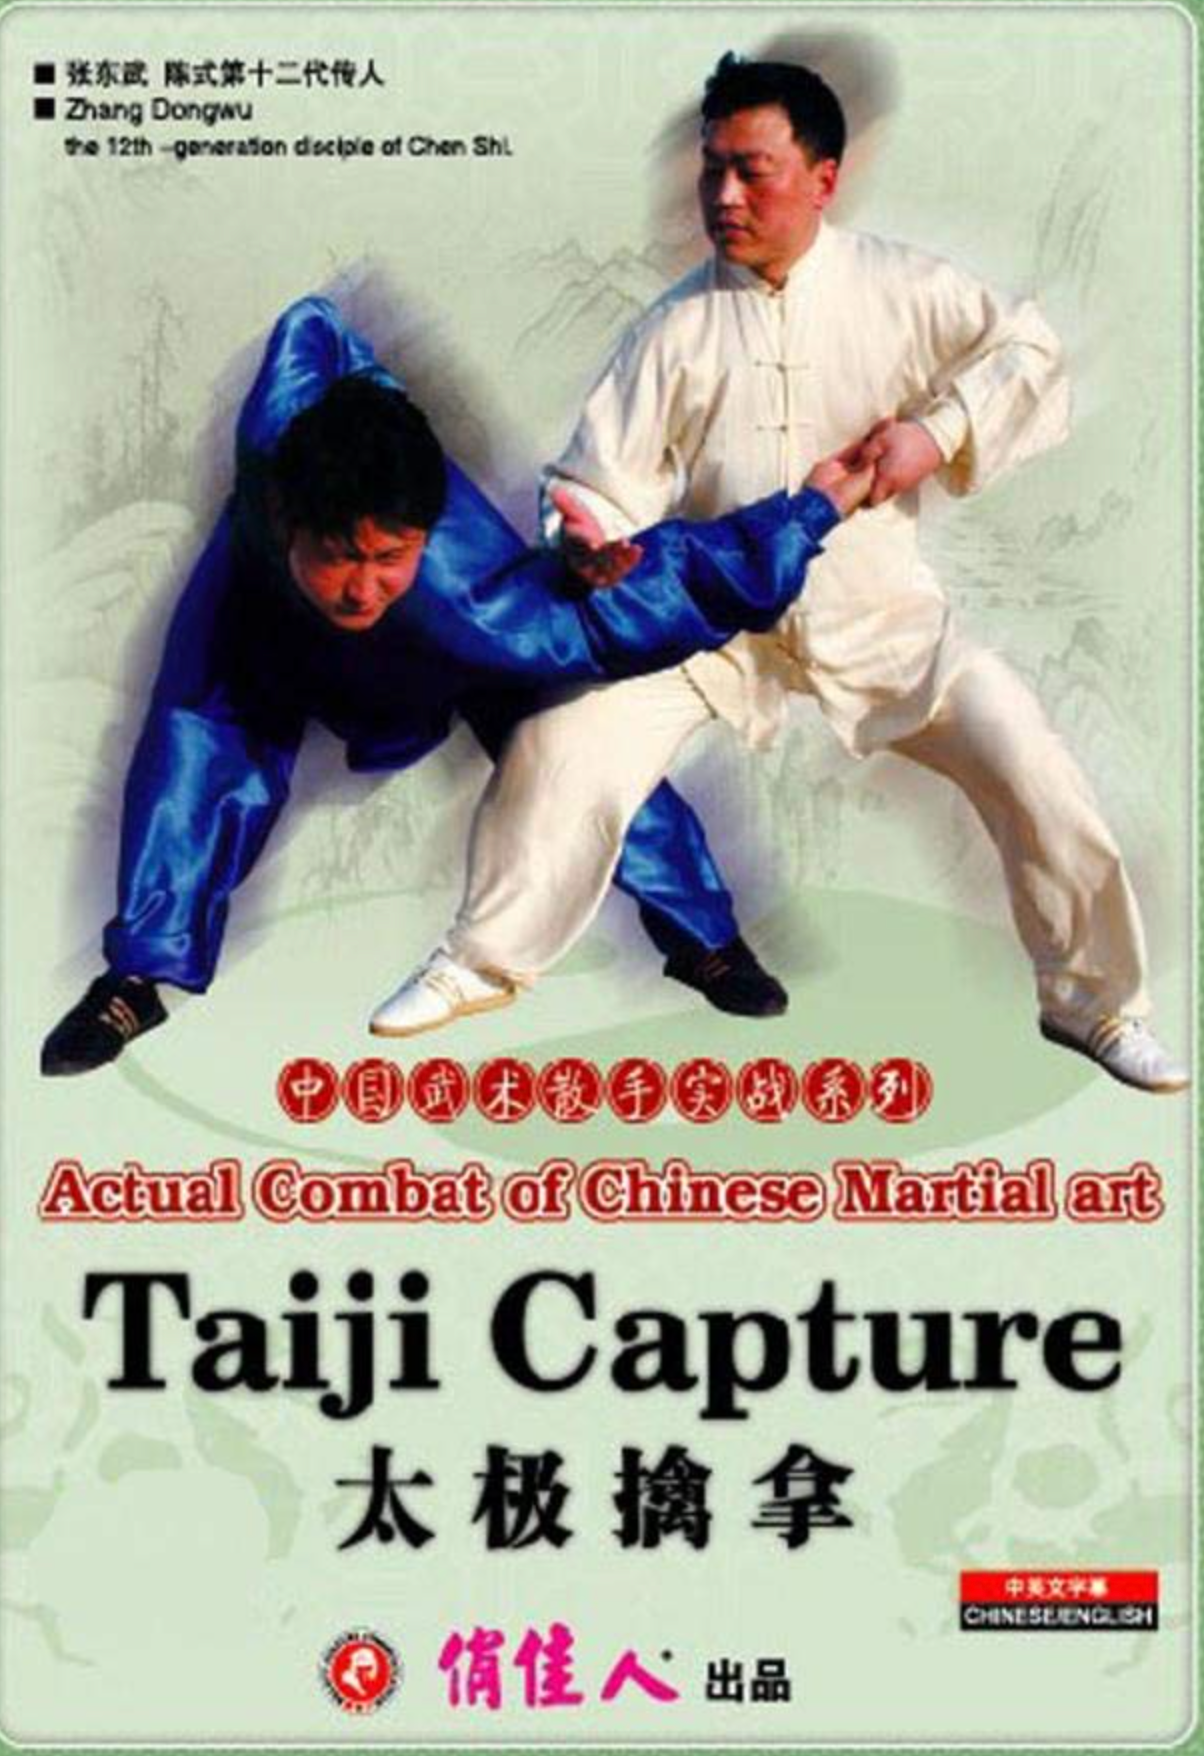 DVD de captura de Taiji del arte marcial chino de combate real de Zhang Dongwu (usado)